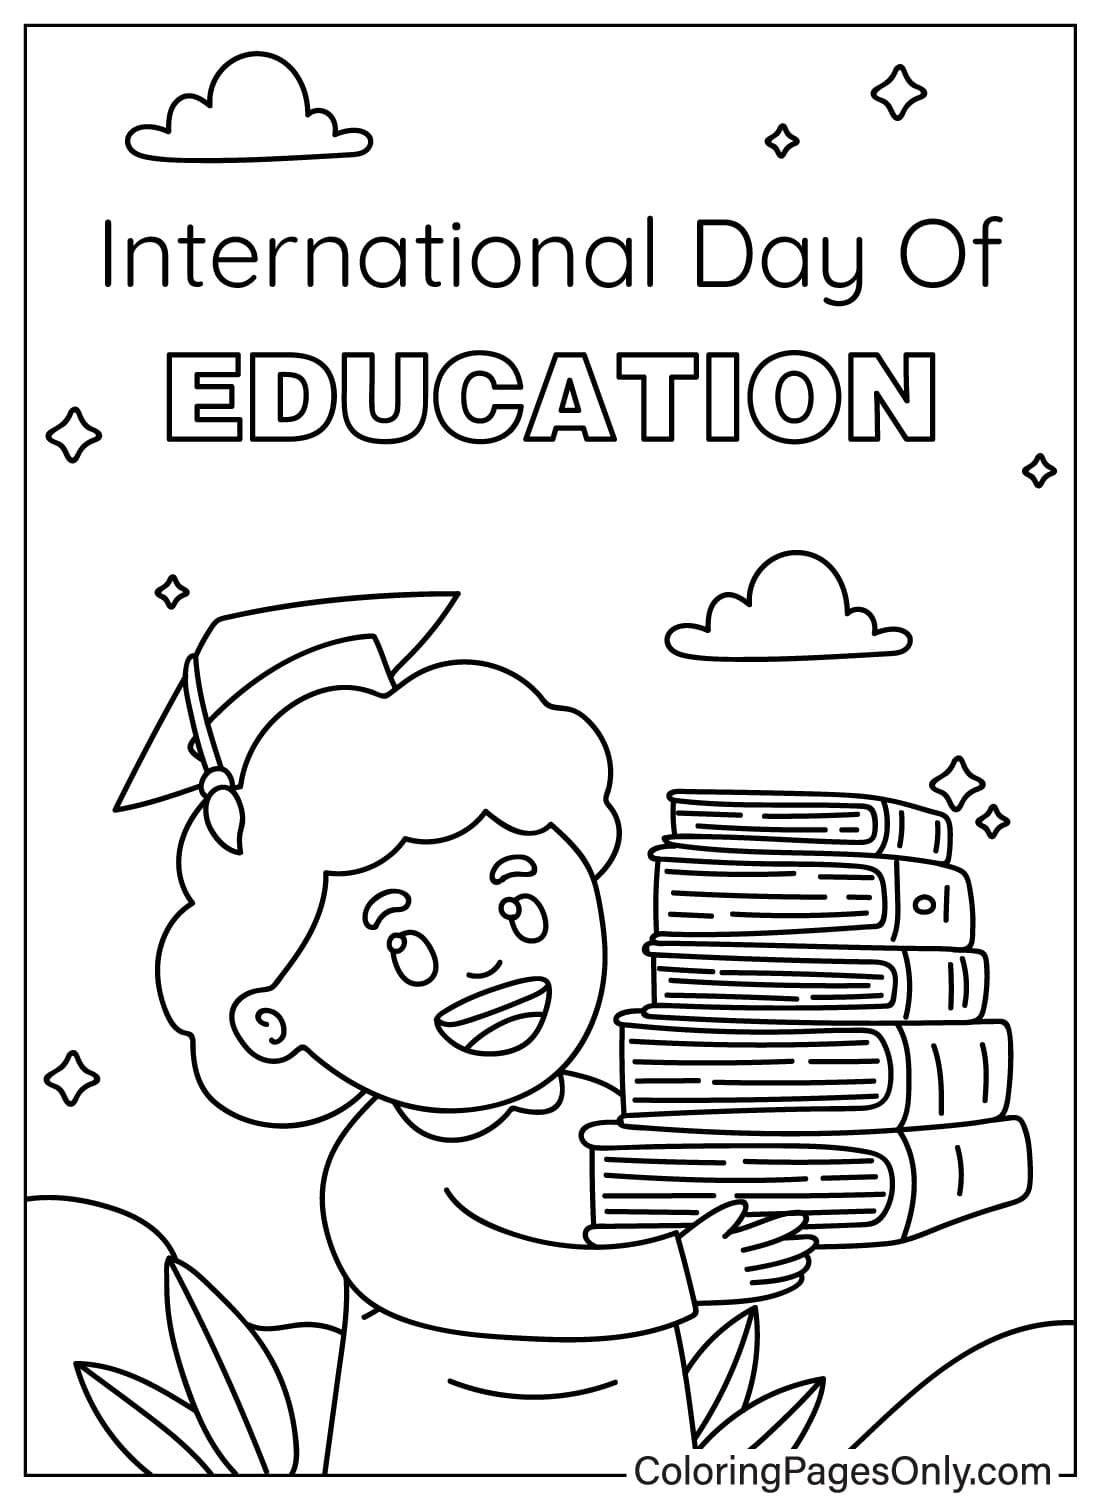 Página para colorear del Día Internacional de la Educación para imprimir del Día Internacional de la Educación